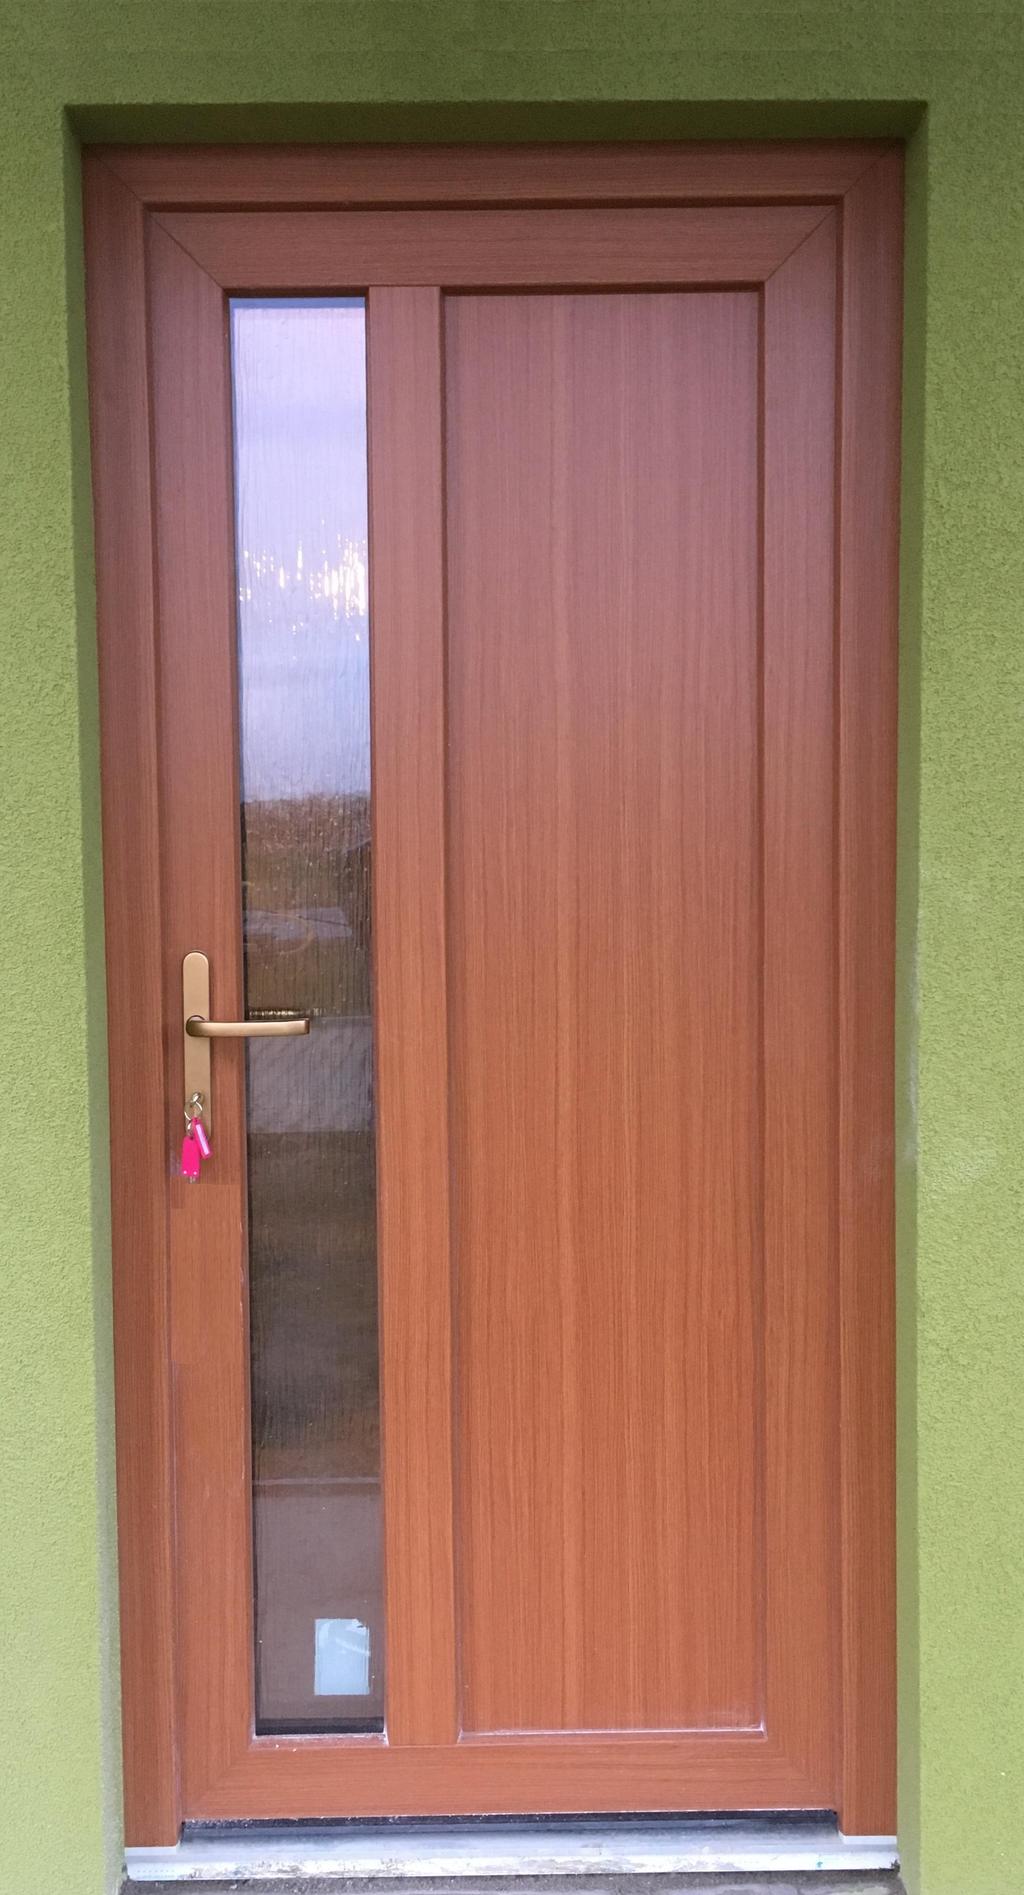 Vchodové dveře plastové, dveřní výplň s prosklením u kliky kůra bronz kování klika klika, široký štítek s překrytím cylindrické vložky 7 komorový profil vnější strana dveří barevná fólie/vnitřní